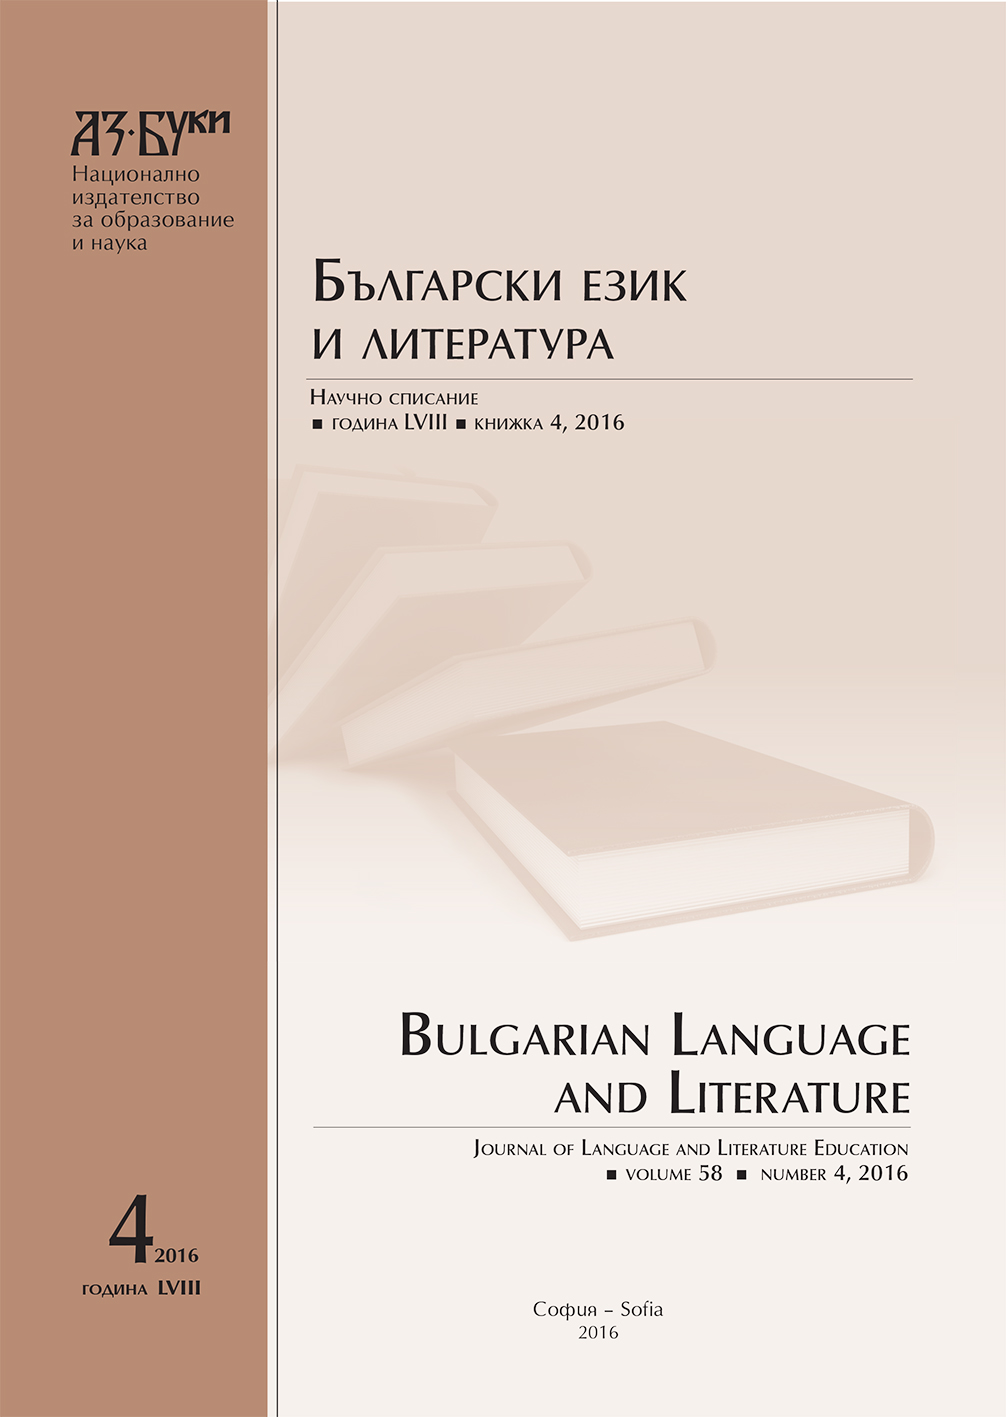 Съвременни лексикални ресурси и тяхното приложение в обучението по български език